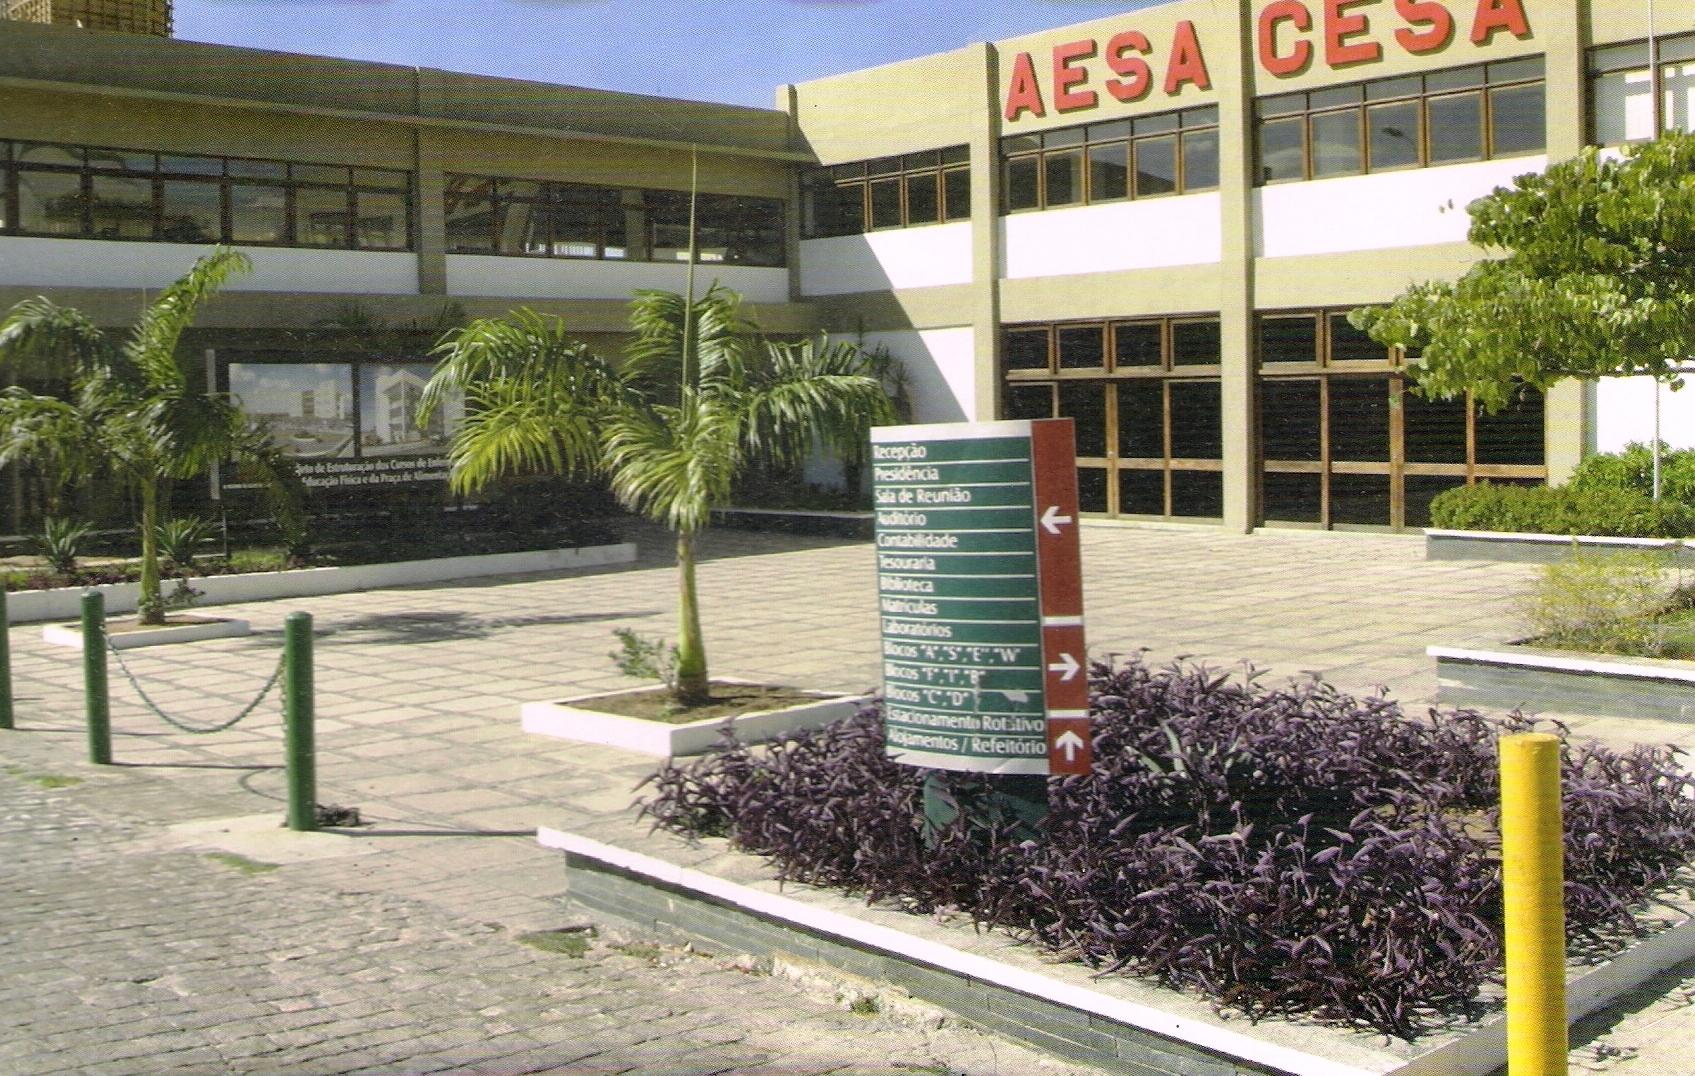 AESA_CESA